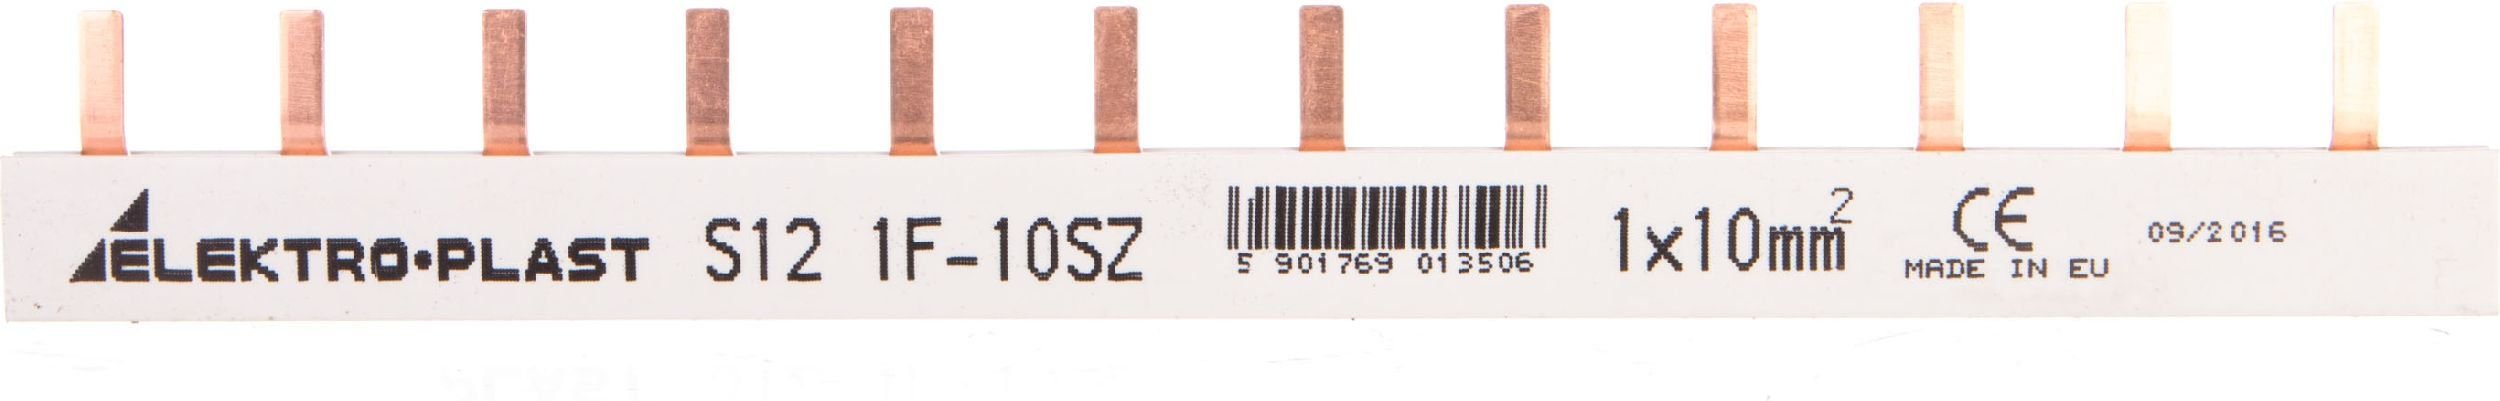 șină de tip PIN 3P 16mm2 100A pin 9 IZS16 / 3F / 9 (45249)